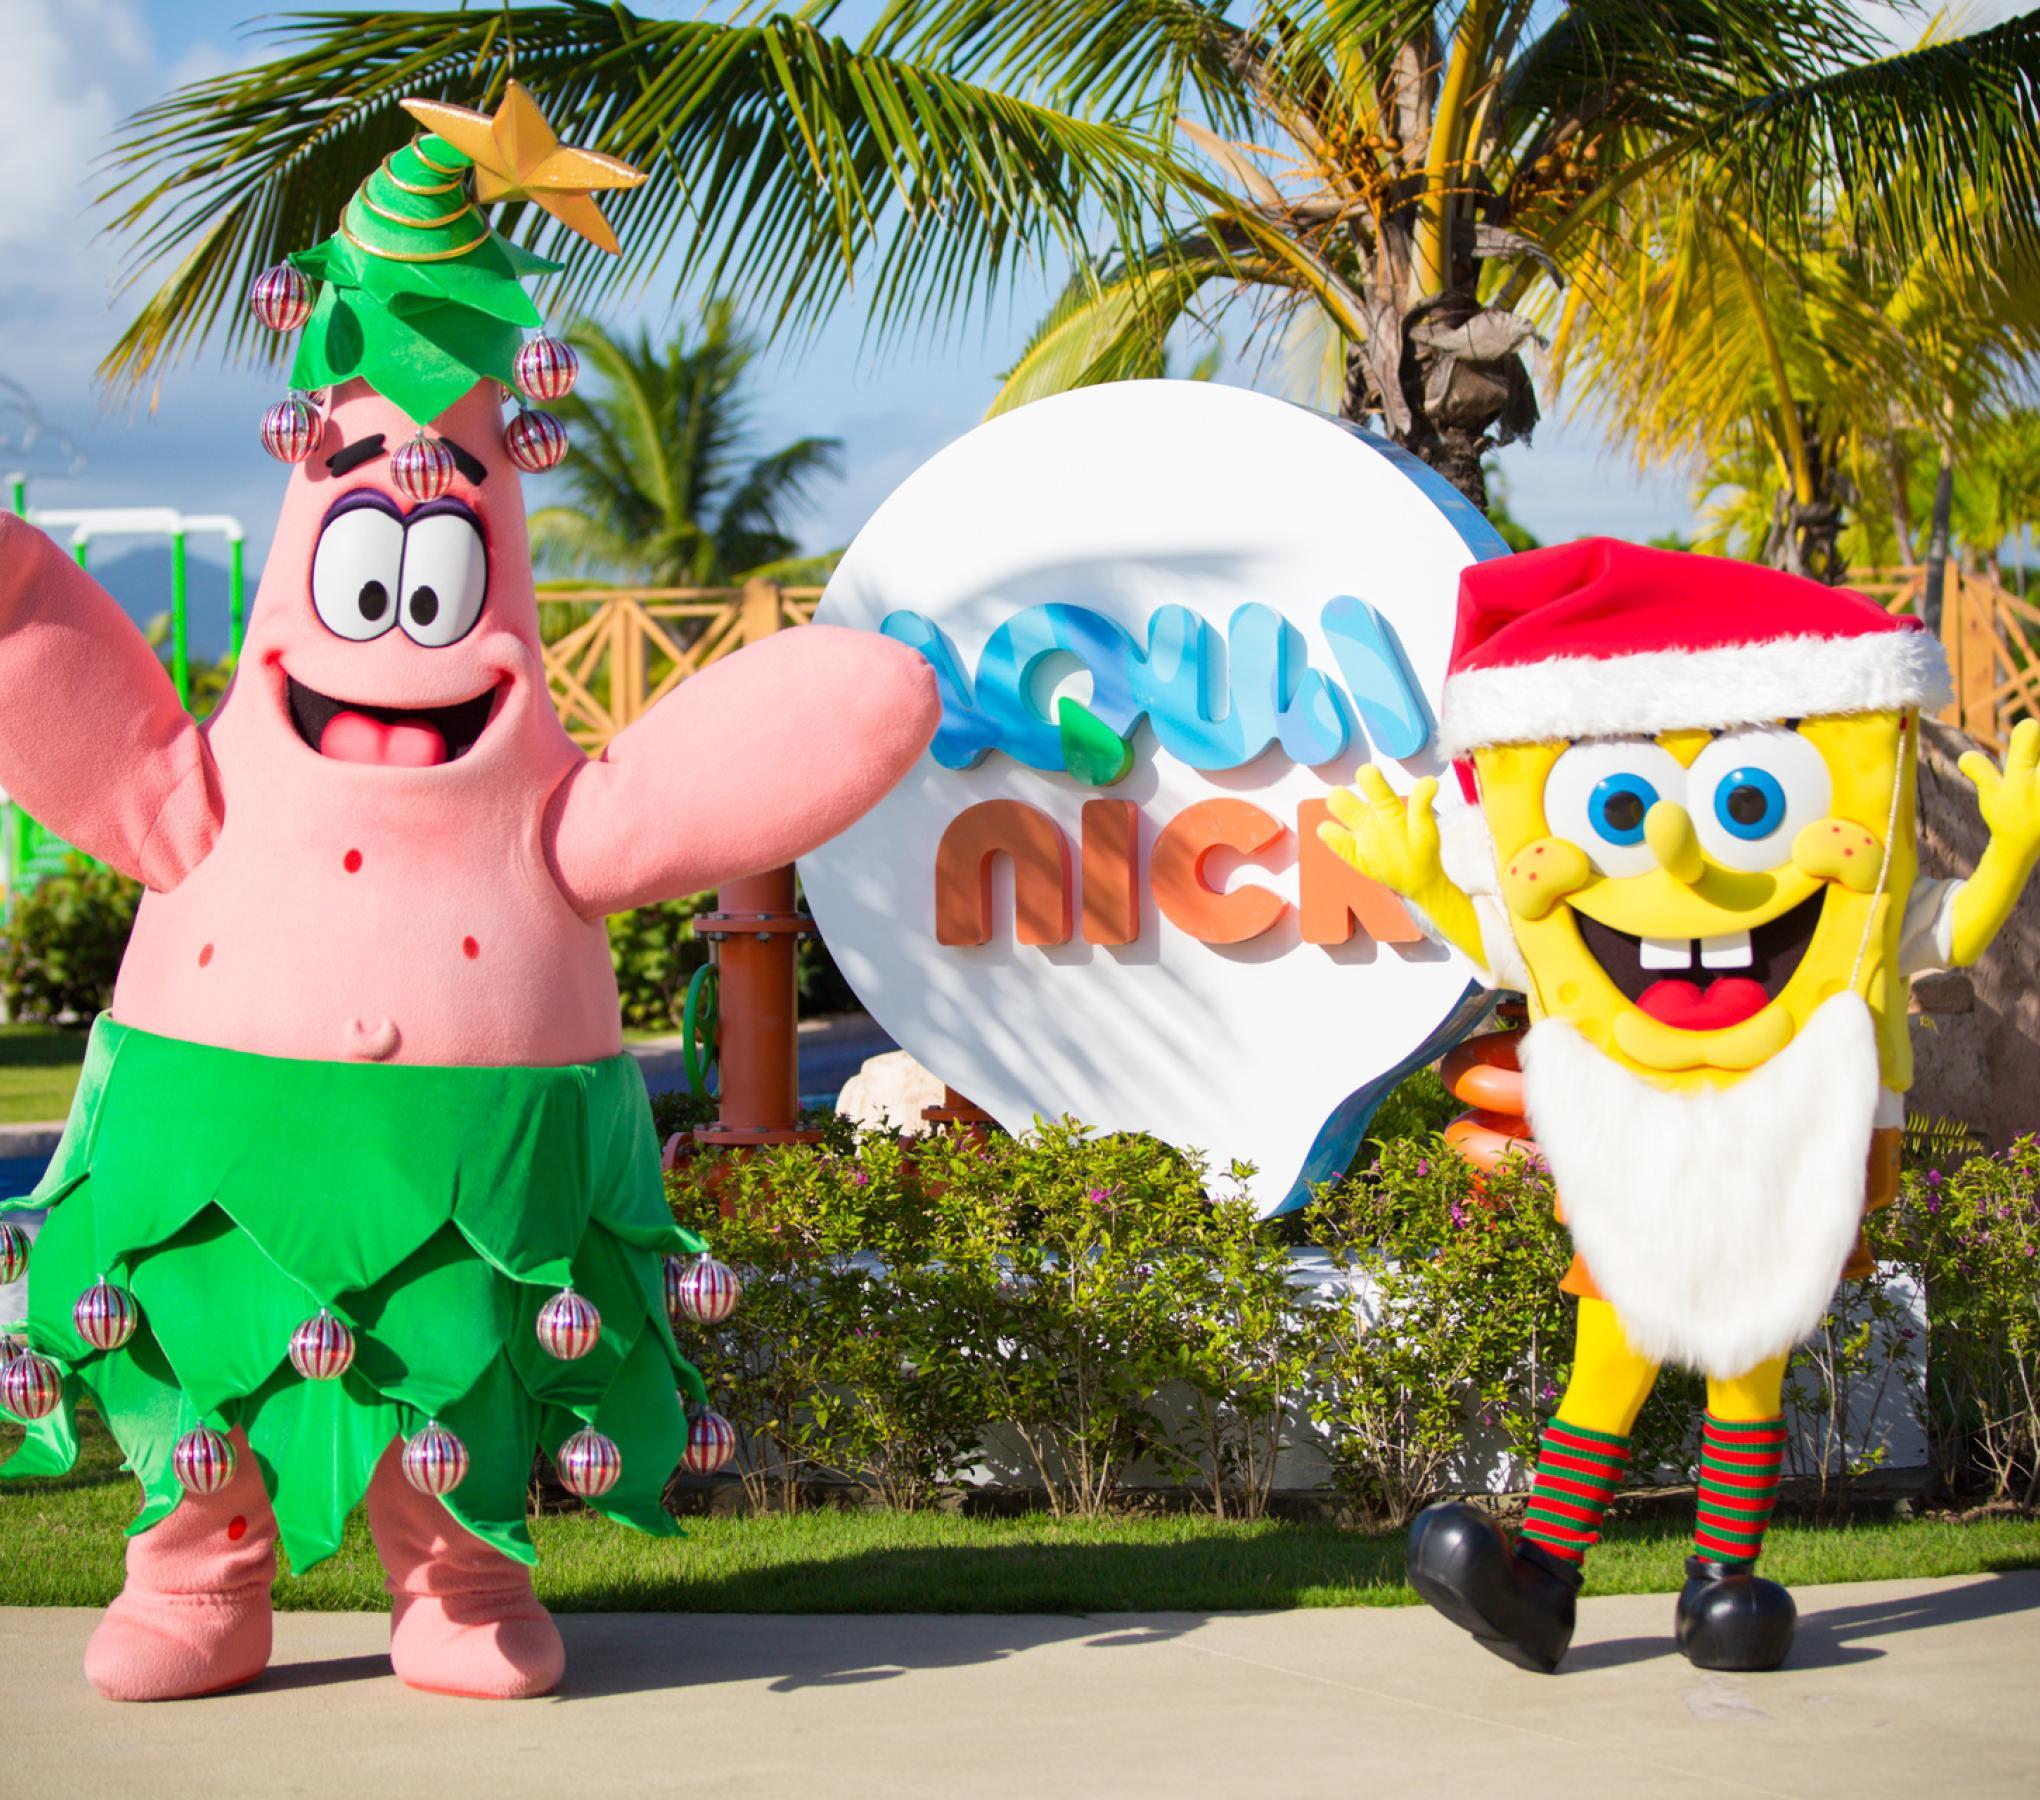 Nick characters at Nickelodeon Punta Cana